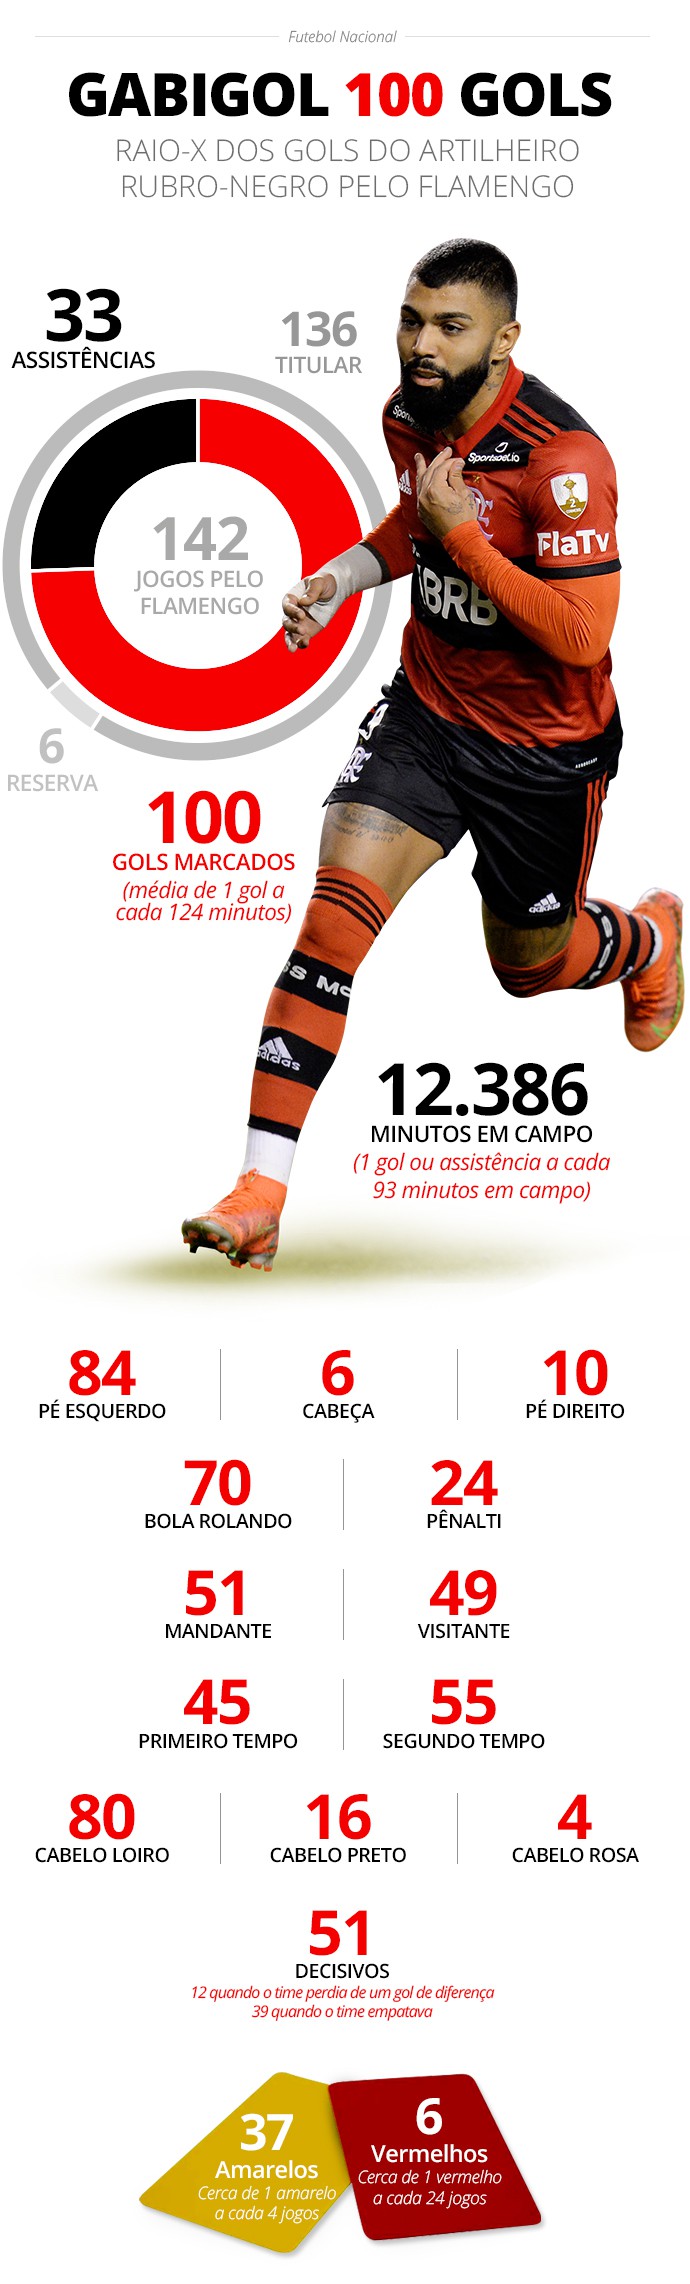 Gabigol é o 7º jogador com mais gols em finais na história do futebol